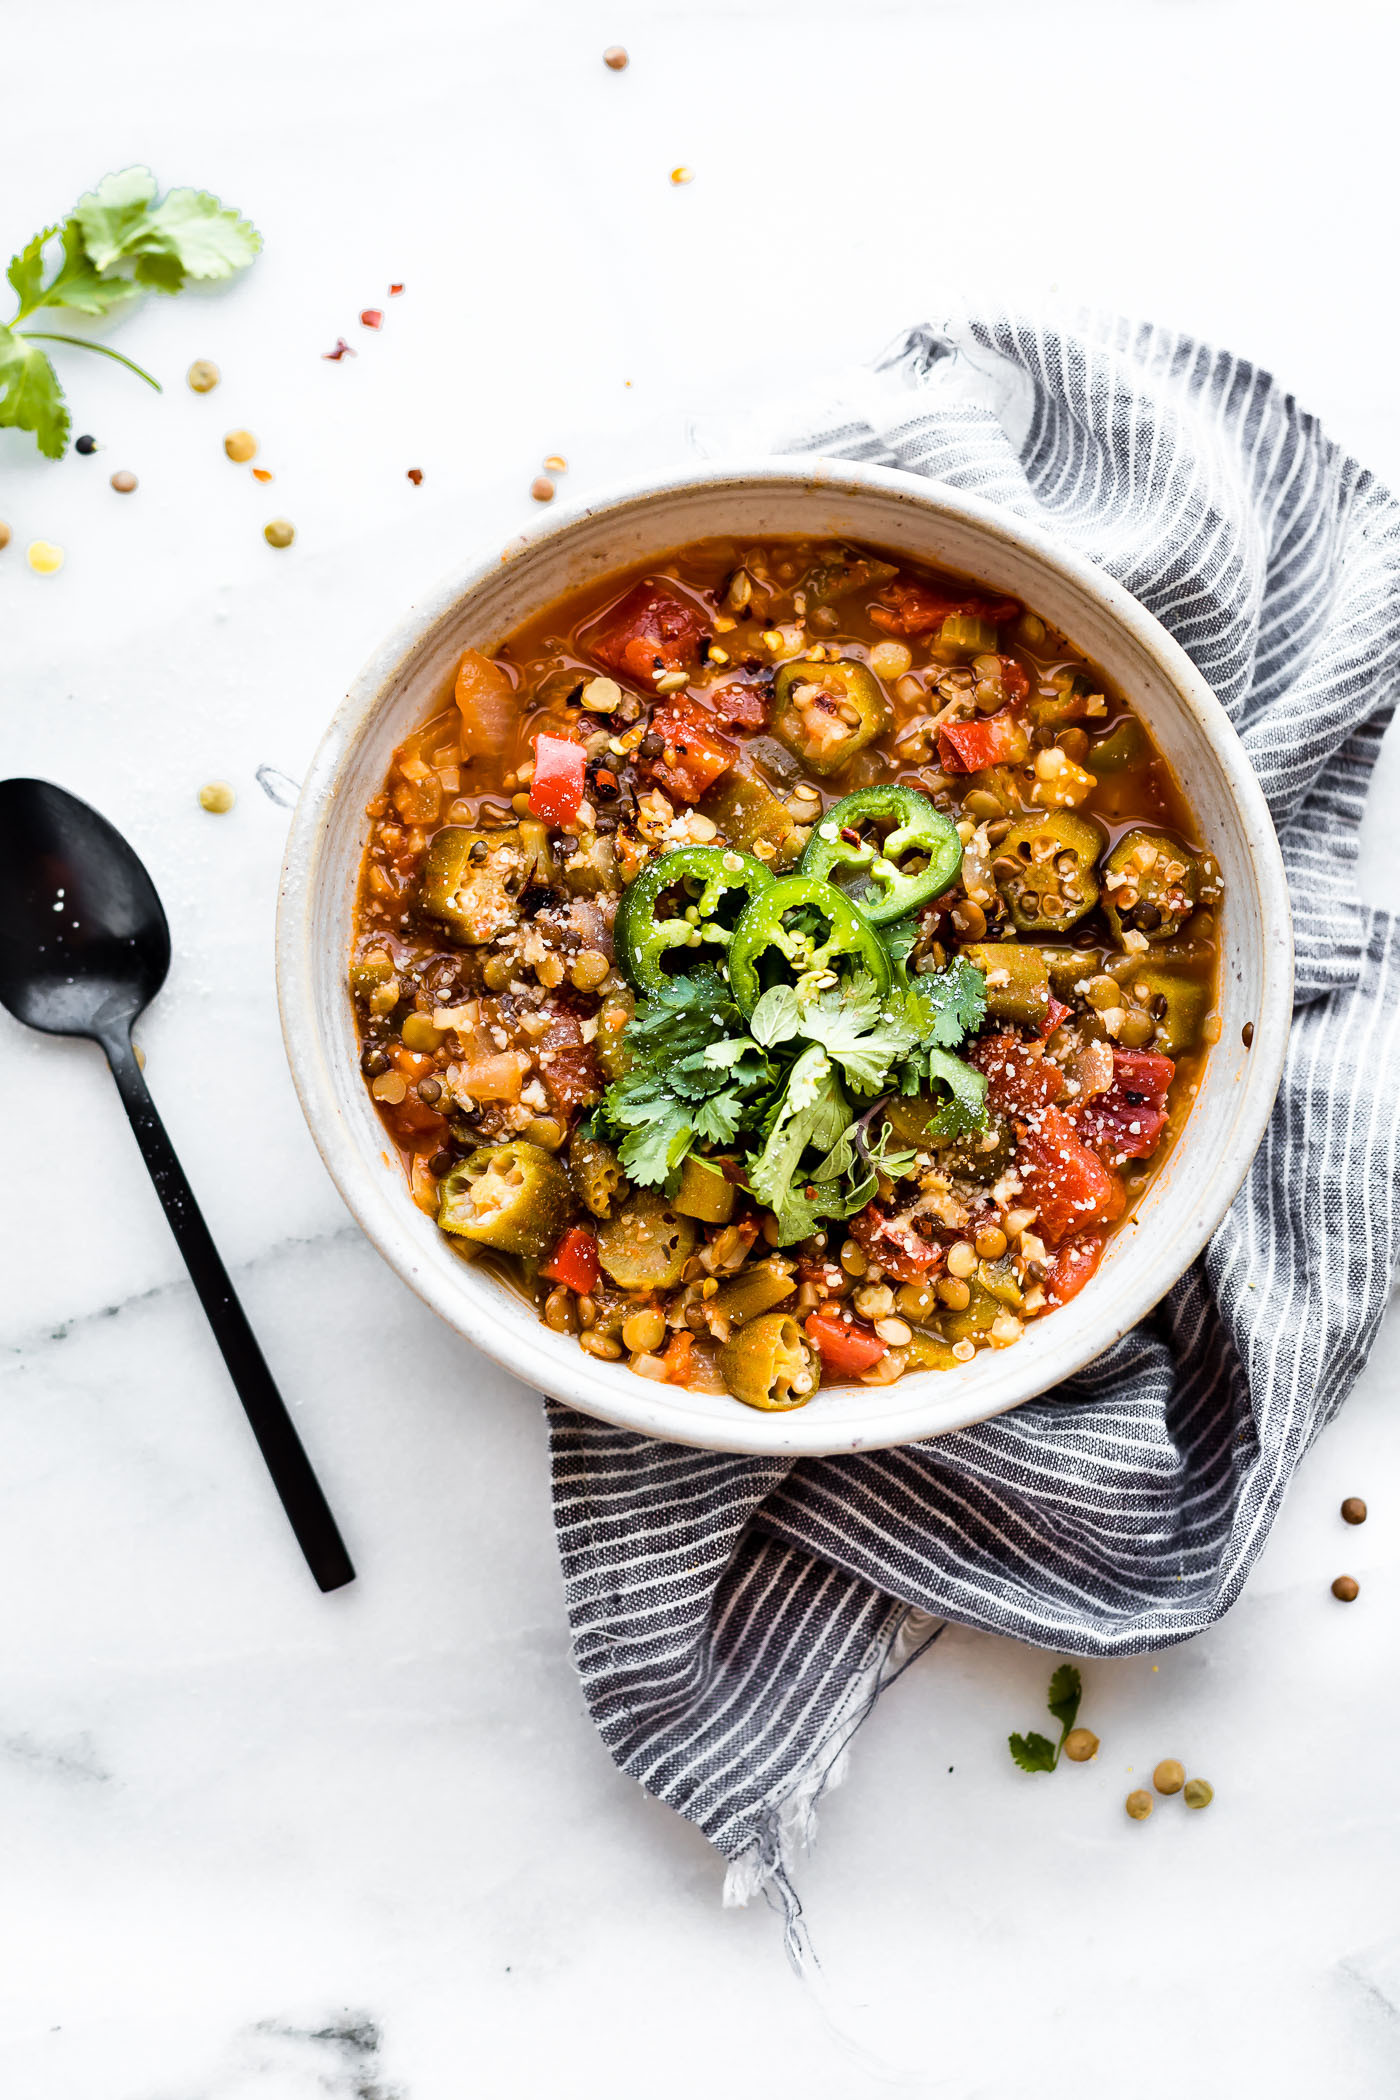 Healthy Vegetarian Instant Pot Recipes
 Instant Pot Lentil Gumbo